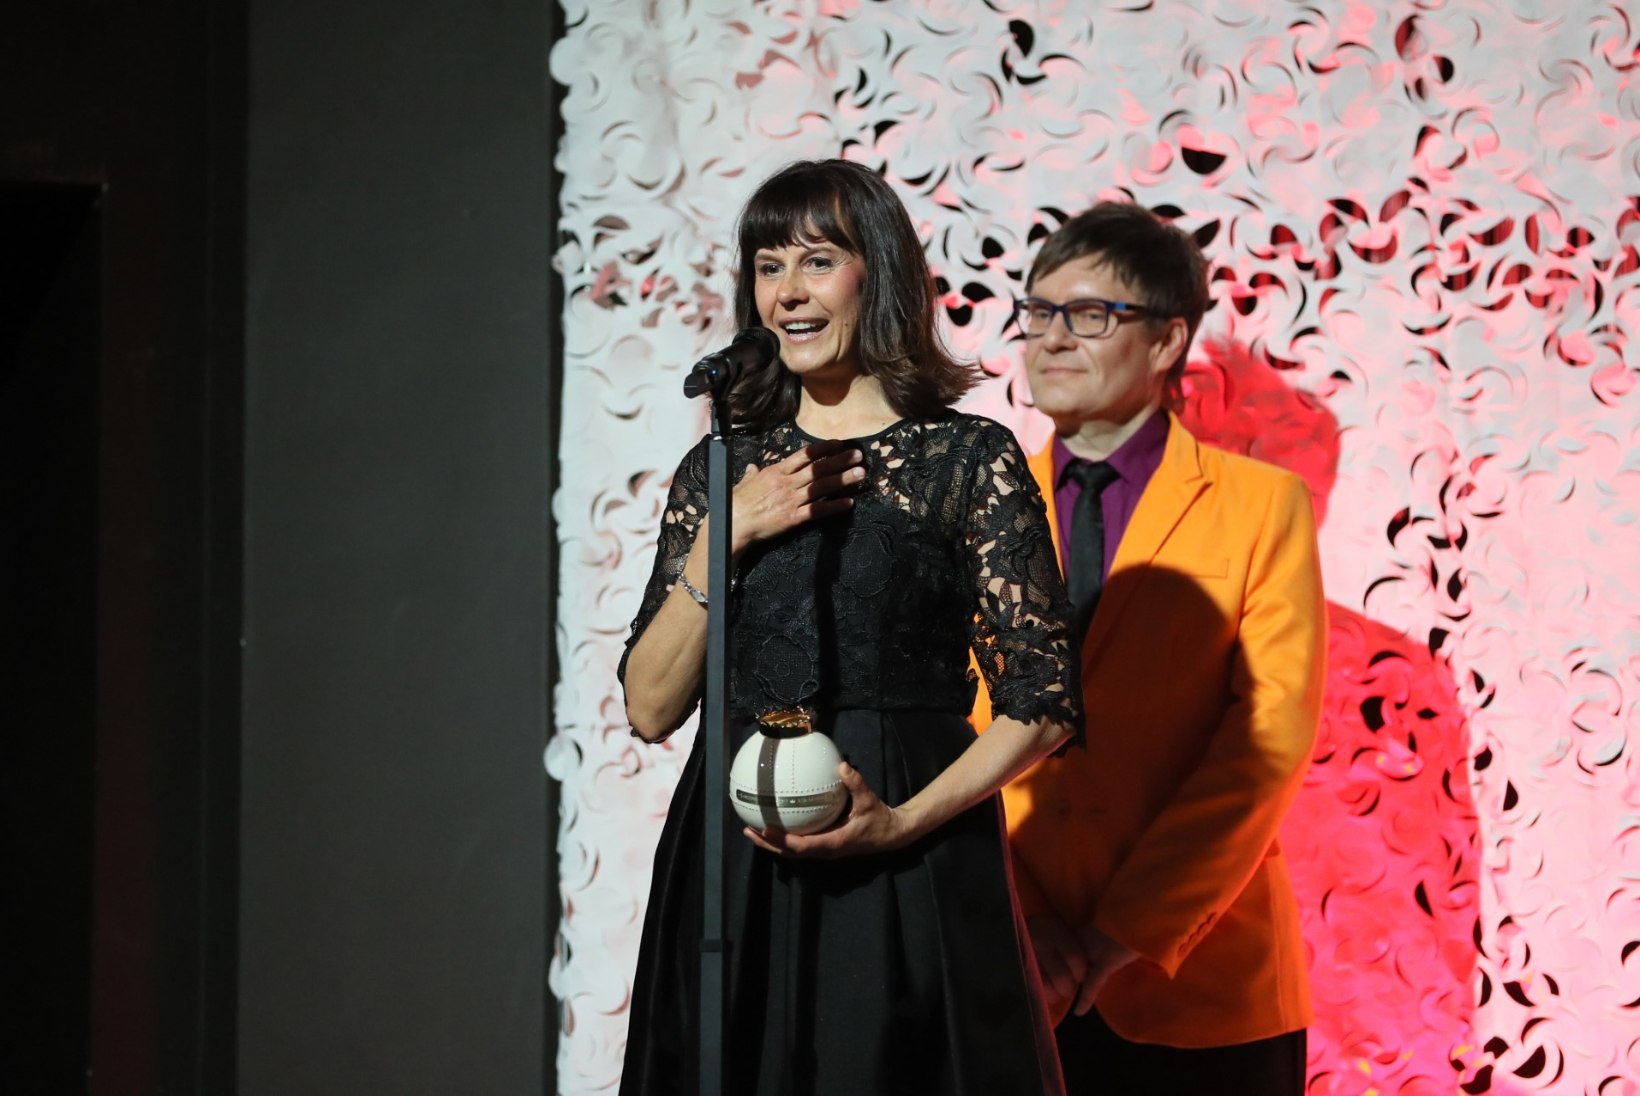 ÕHTULEHE VIDEO | Rita Rätsepp: "Kroonika lemmiku auhind oli šokk!"